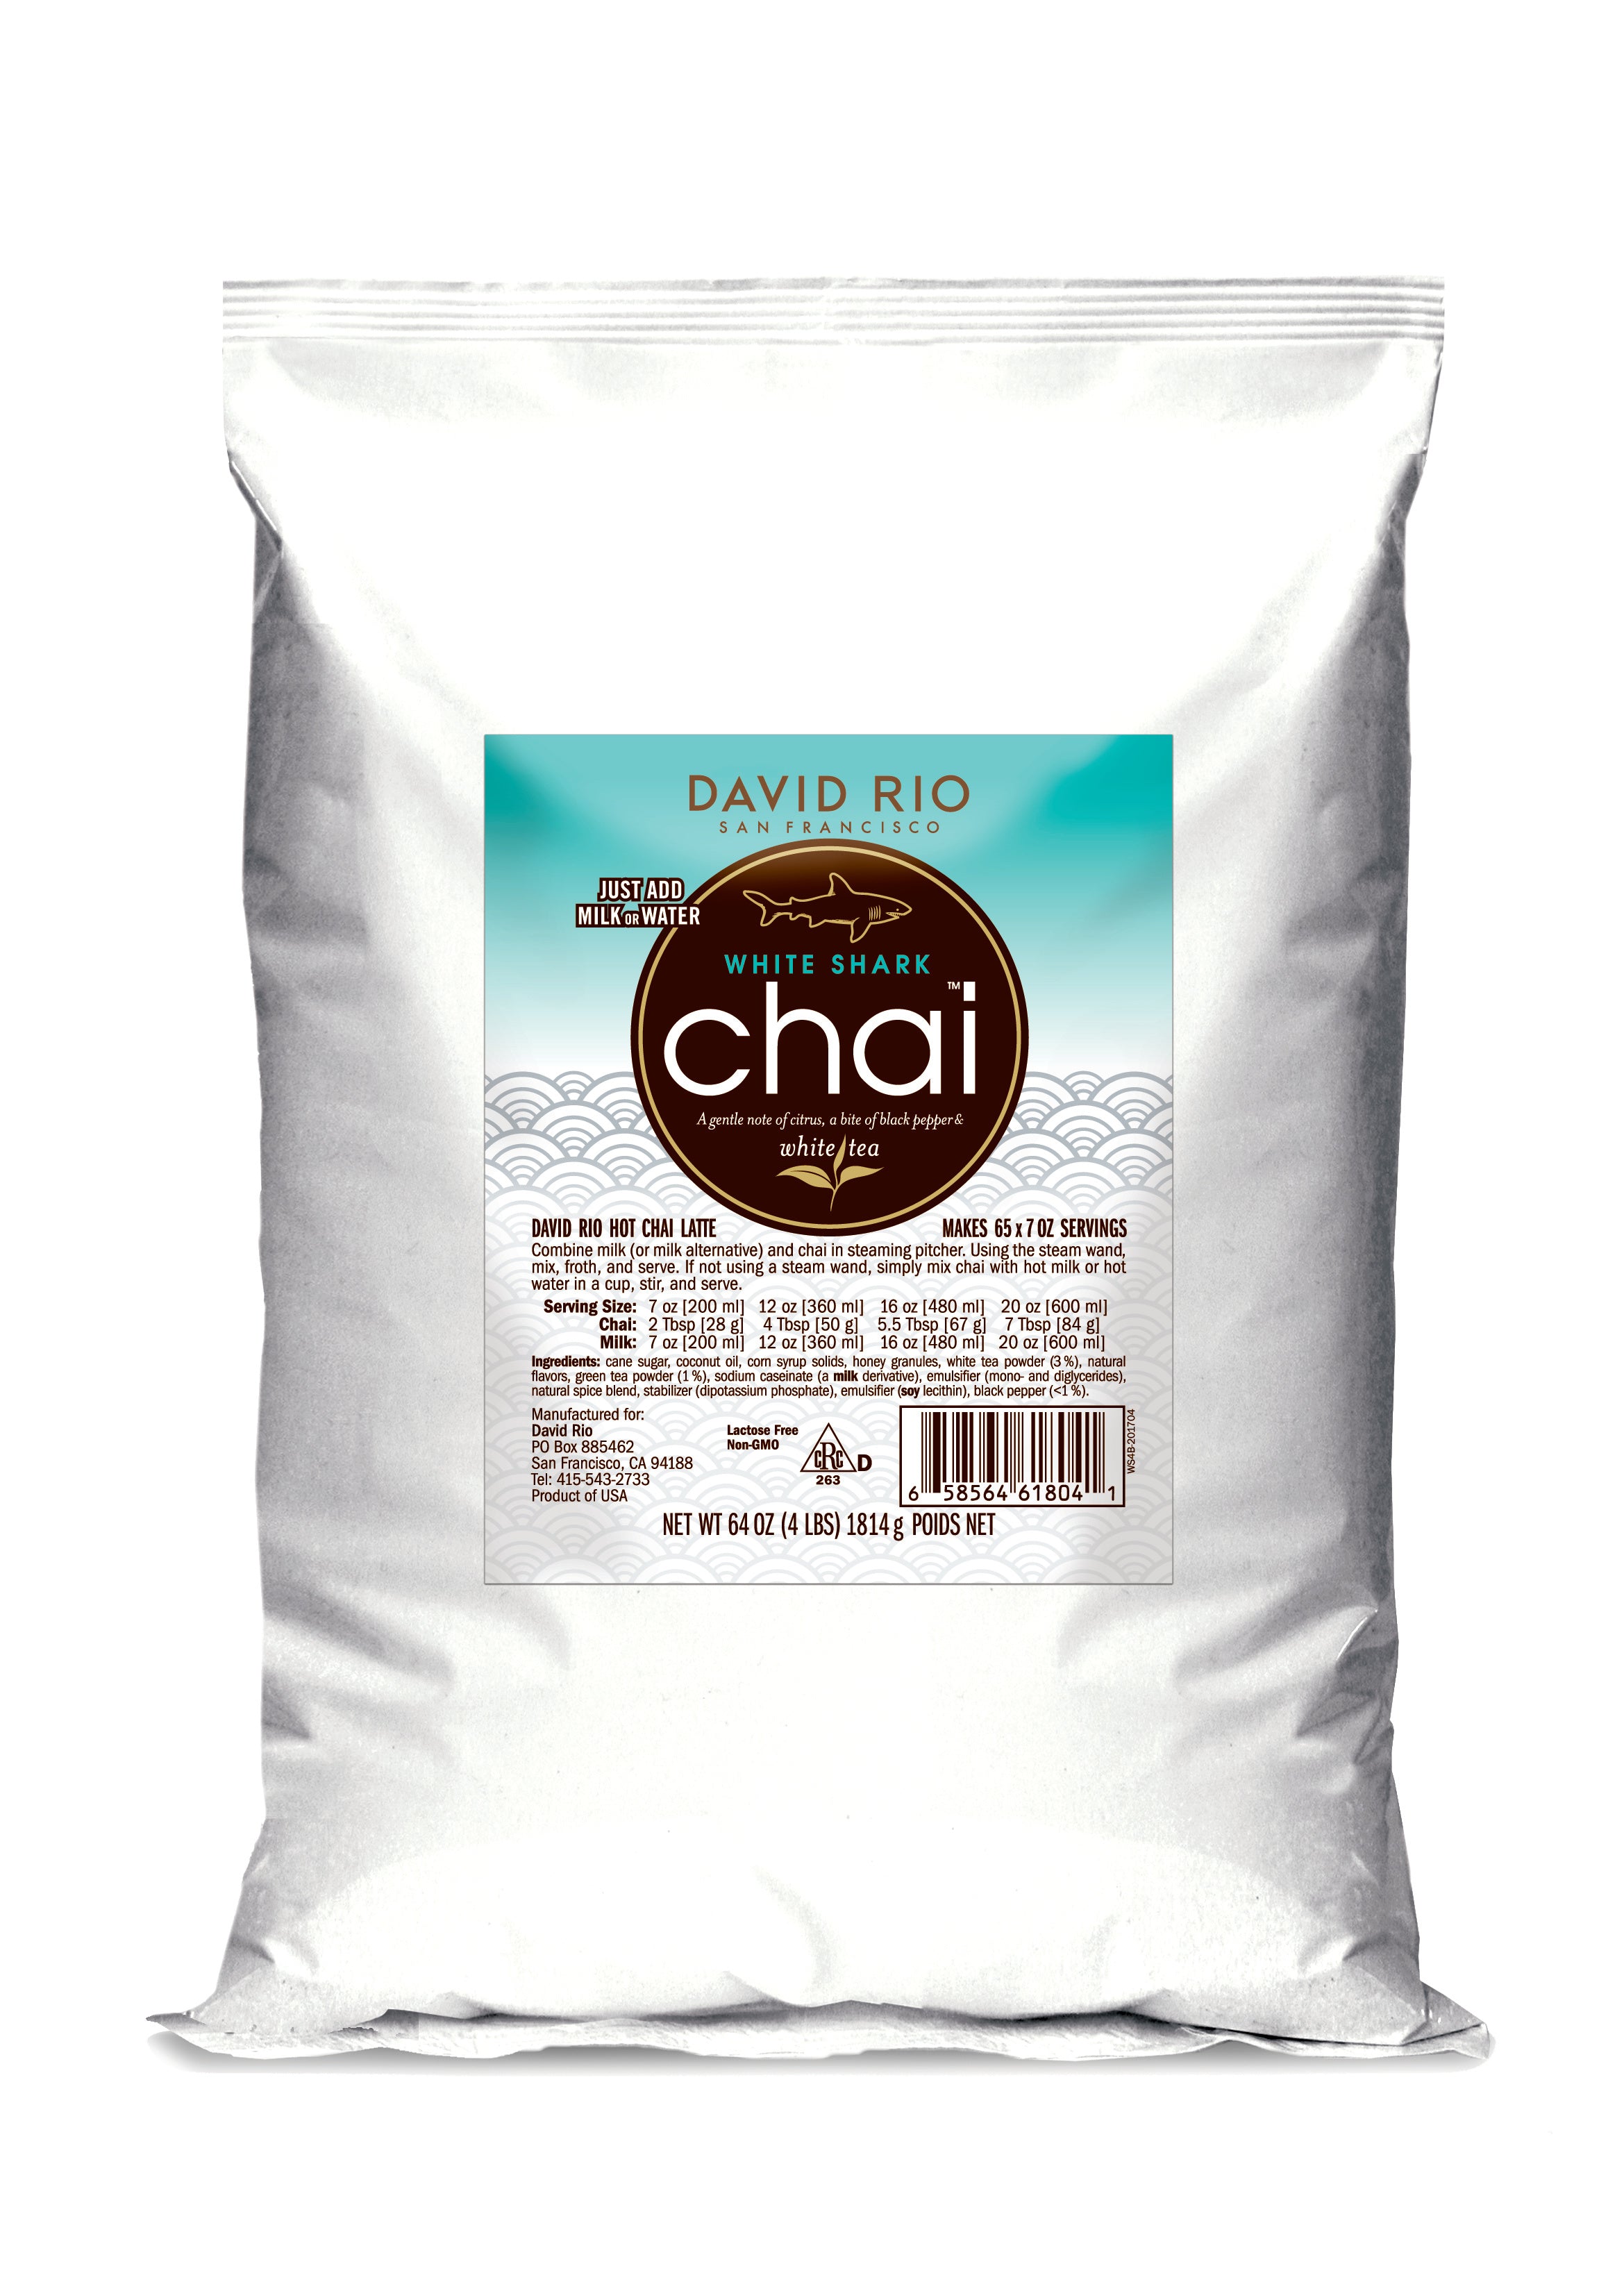 Orca Spice™ Sugar-Free Chai